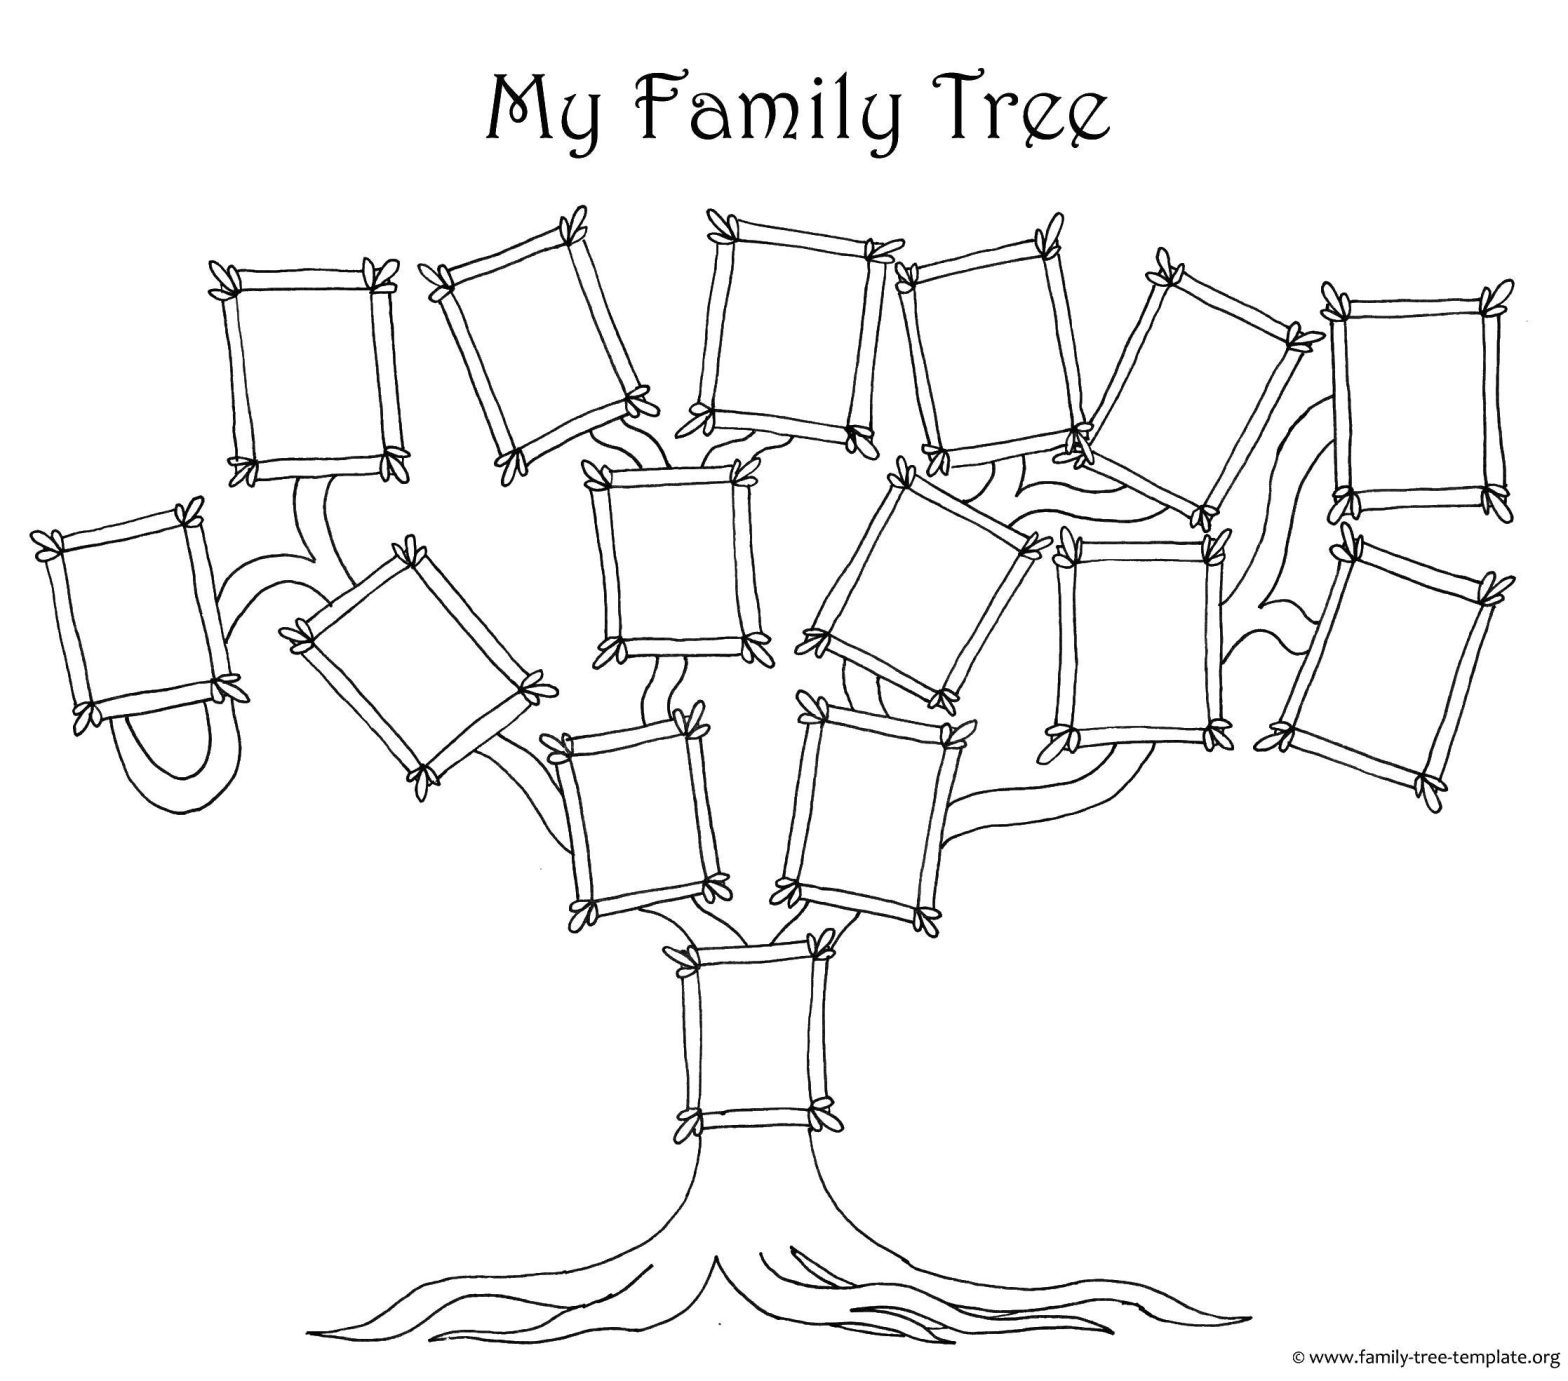 Раскраска семейного дерева